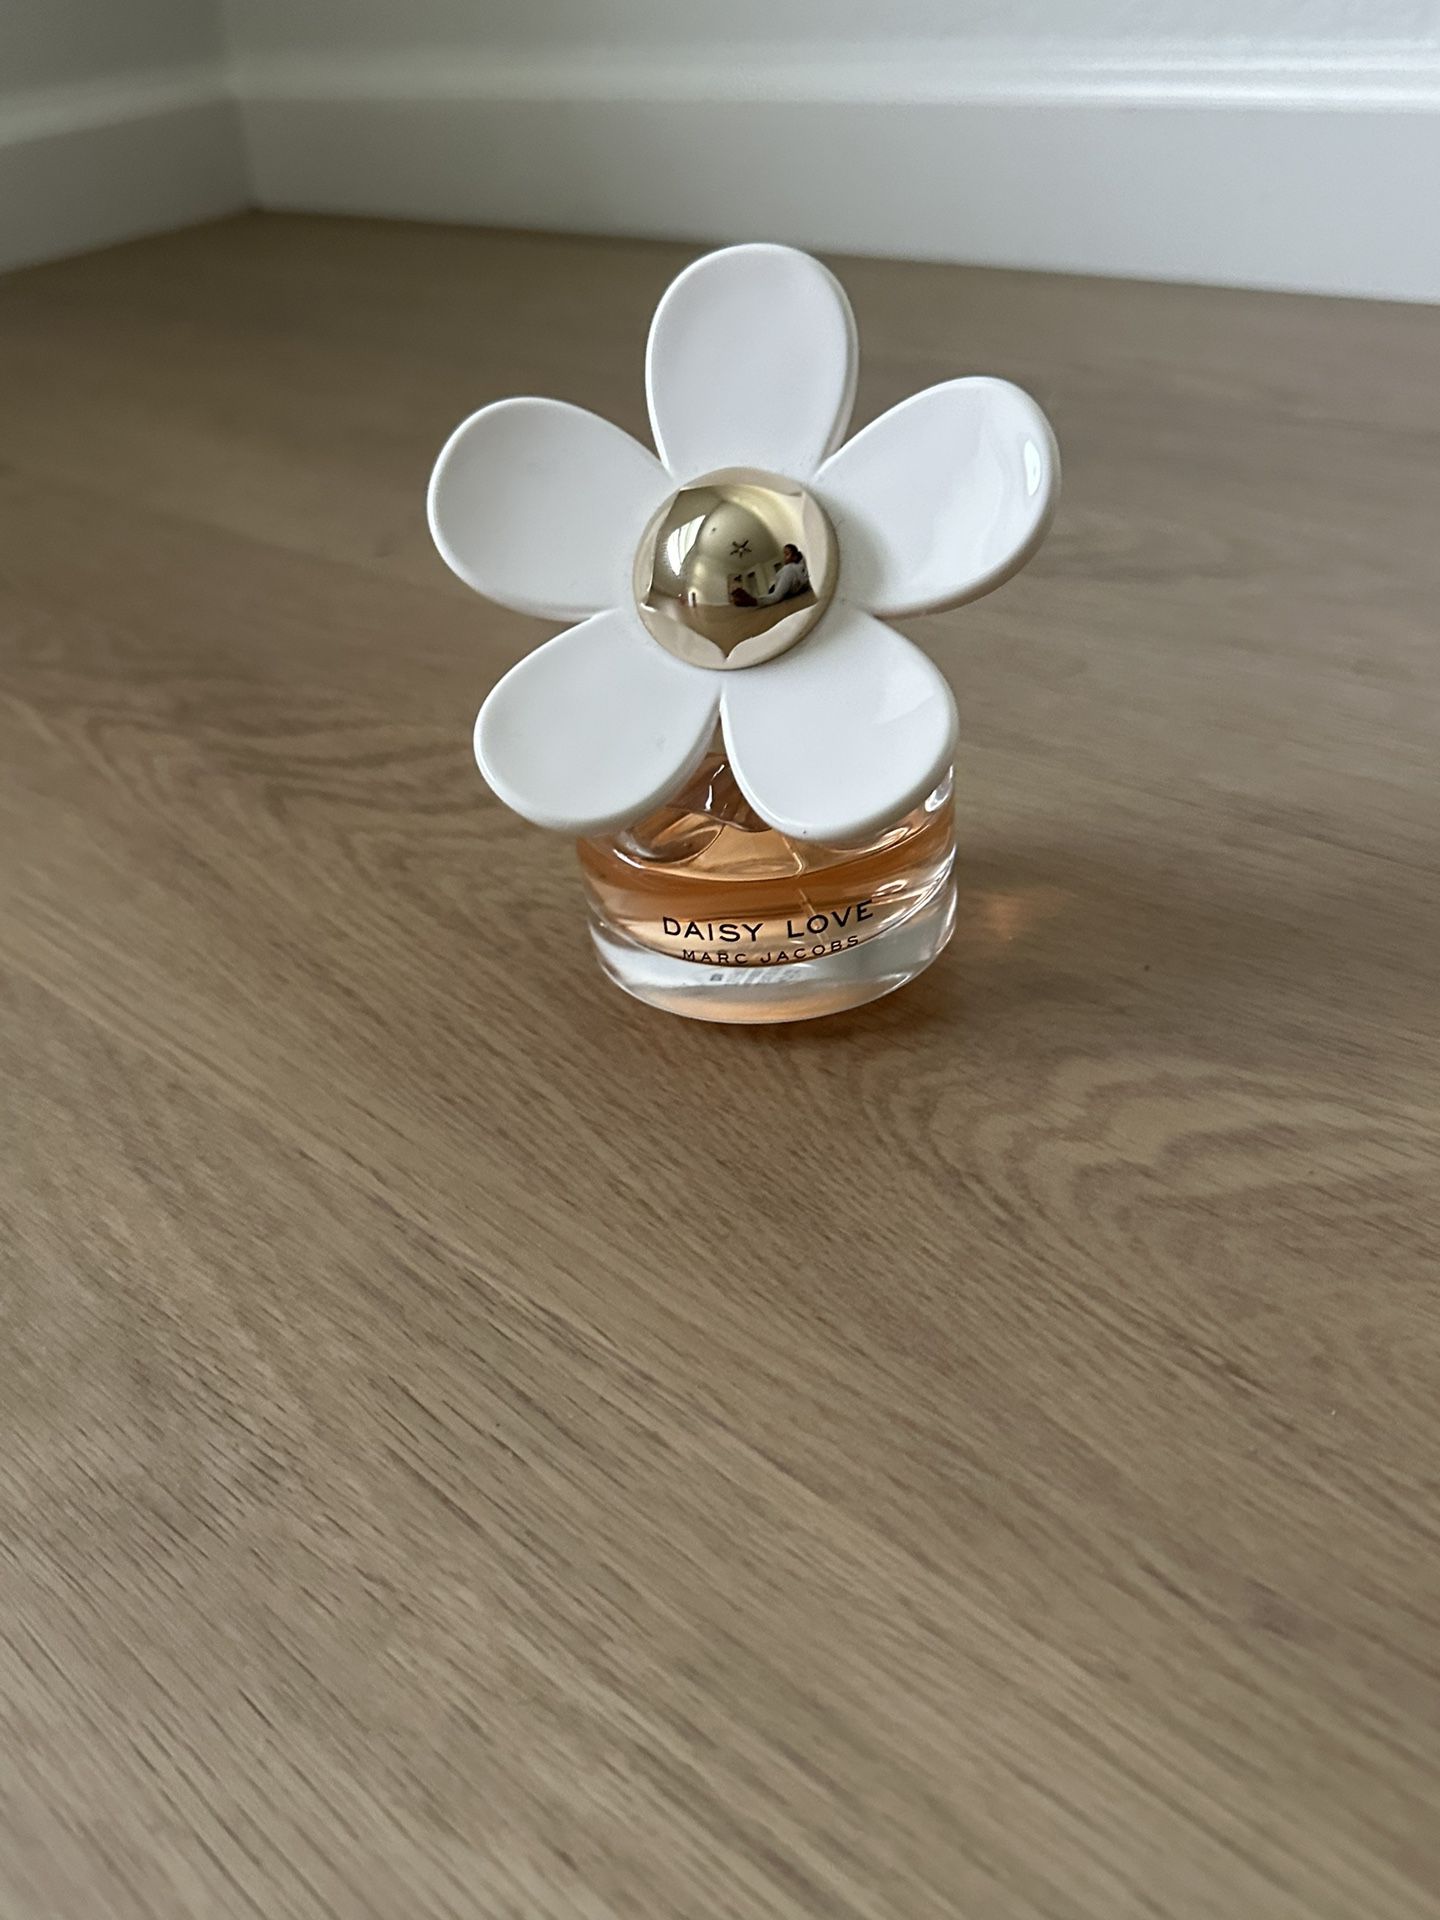 Marc Jacobs Daisy Love Perfum